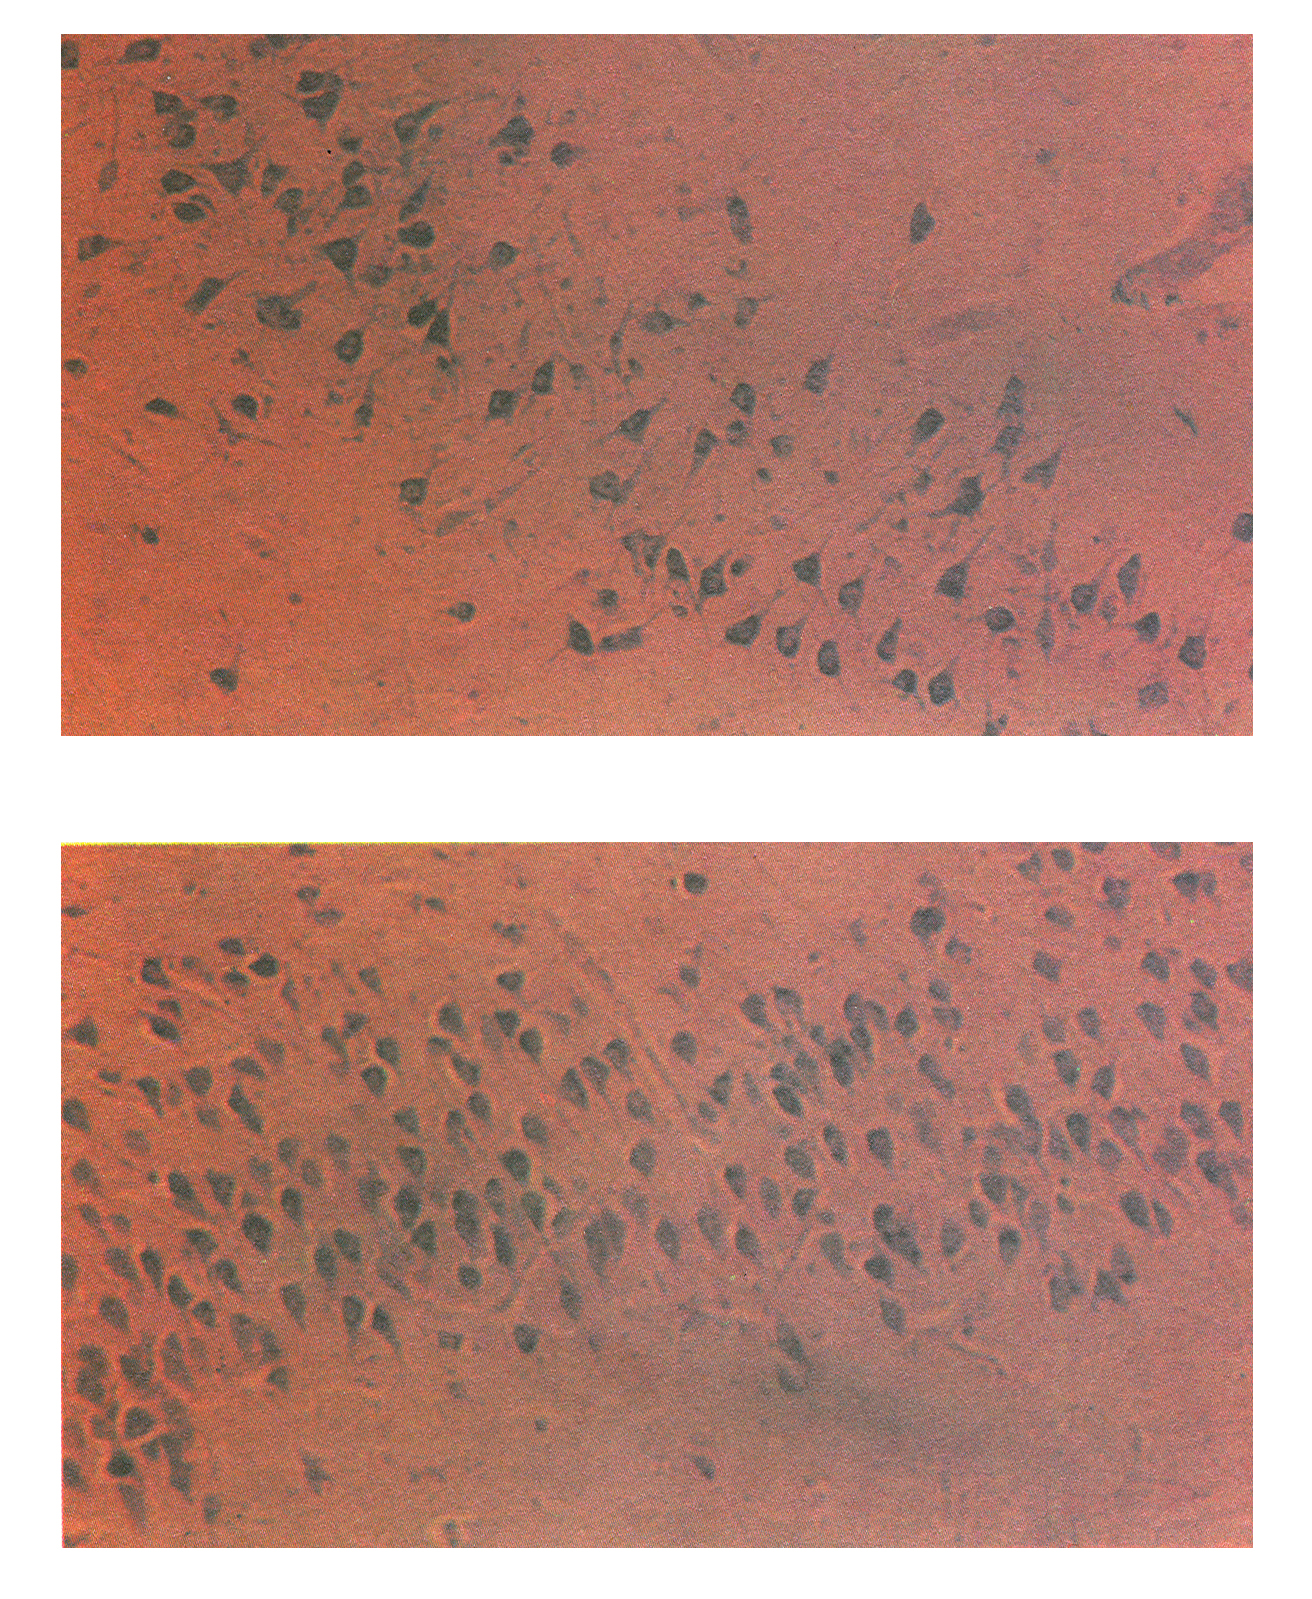 Видно {вверху), что нейроны гиппокампа, окрашенные в фиолетово-коричневатый цвет, отличаются ненормальной формой и расположением, а число их меньше, чем у нормального индивидуума того же возраста (внизу).